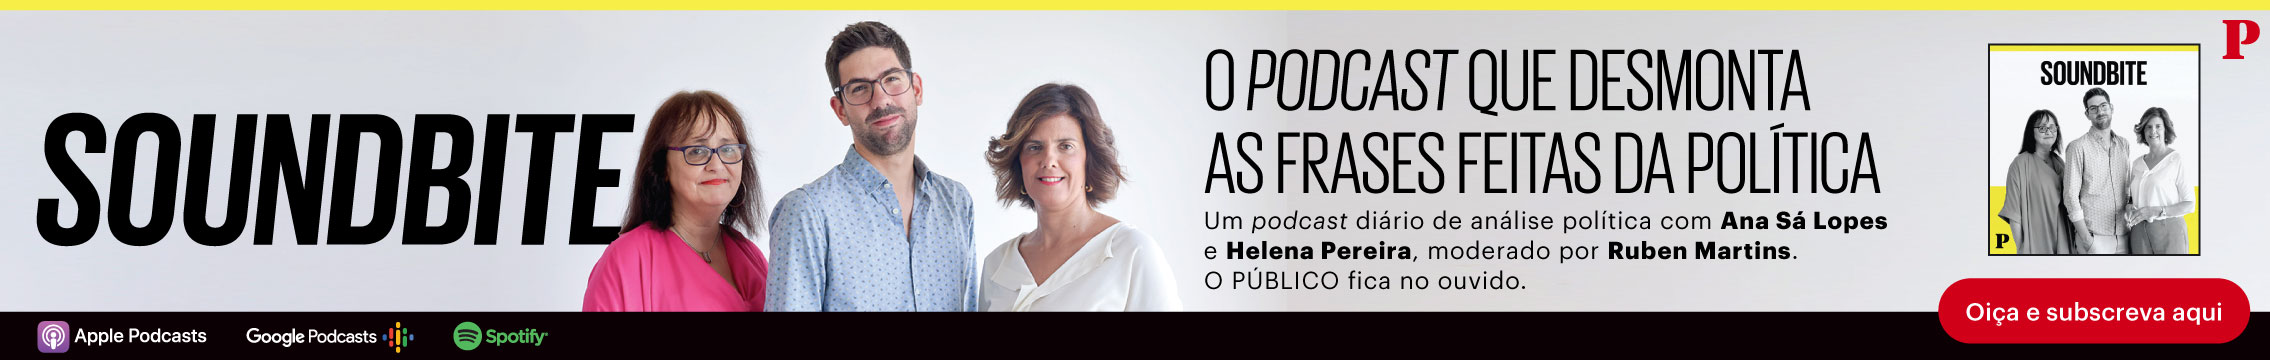 Diário do Rio apresenta editoria Jogos, na qual o leitor pode se